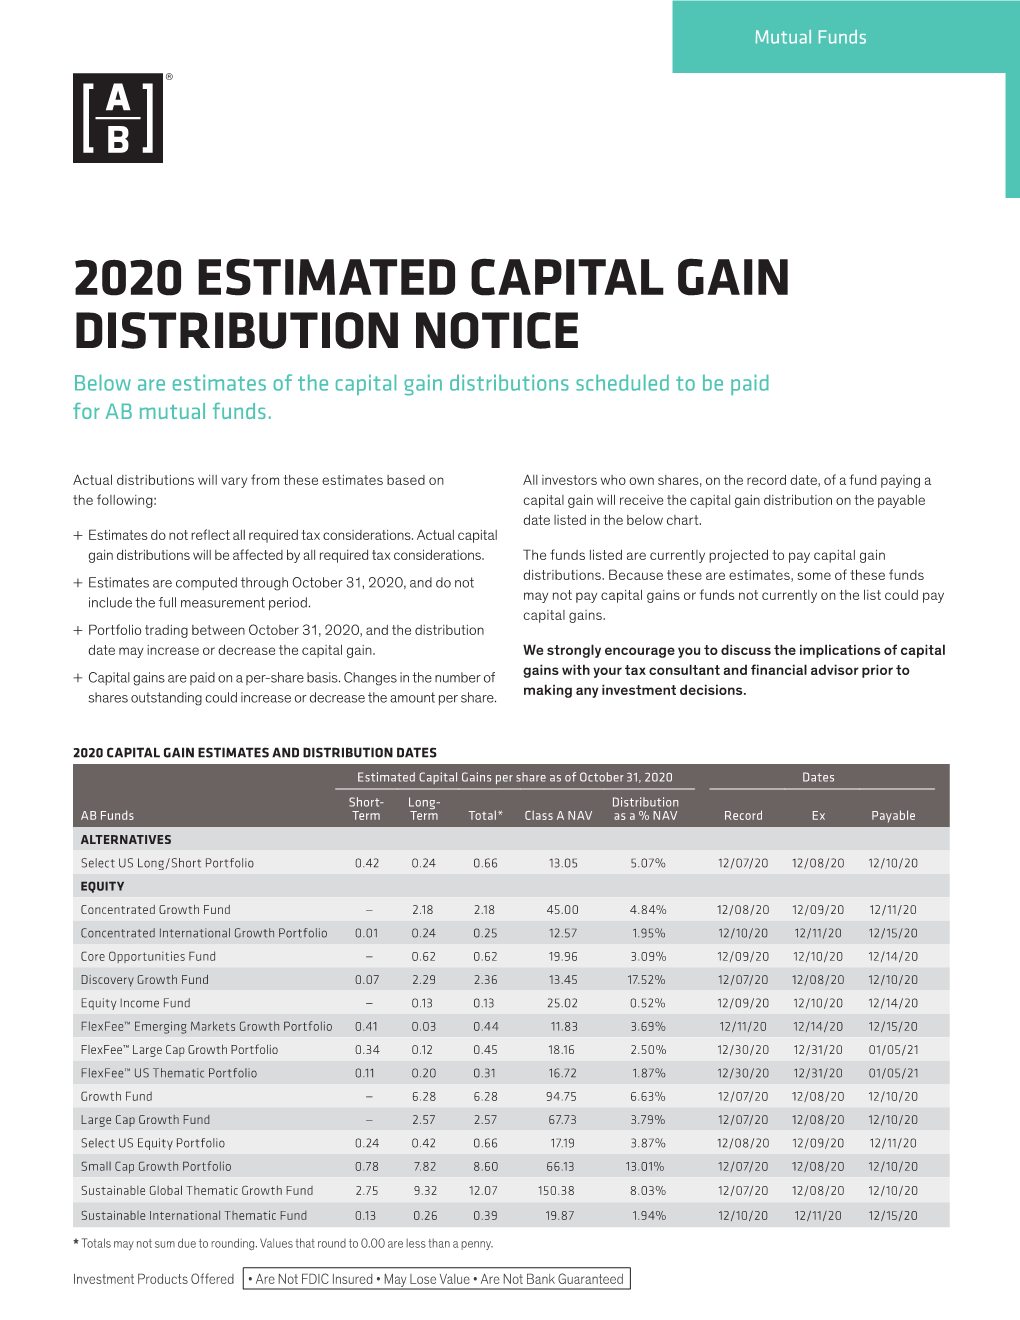 2020 Capital Gain Estimates